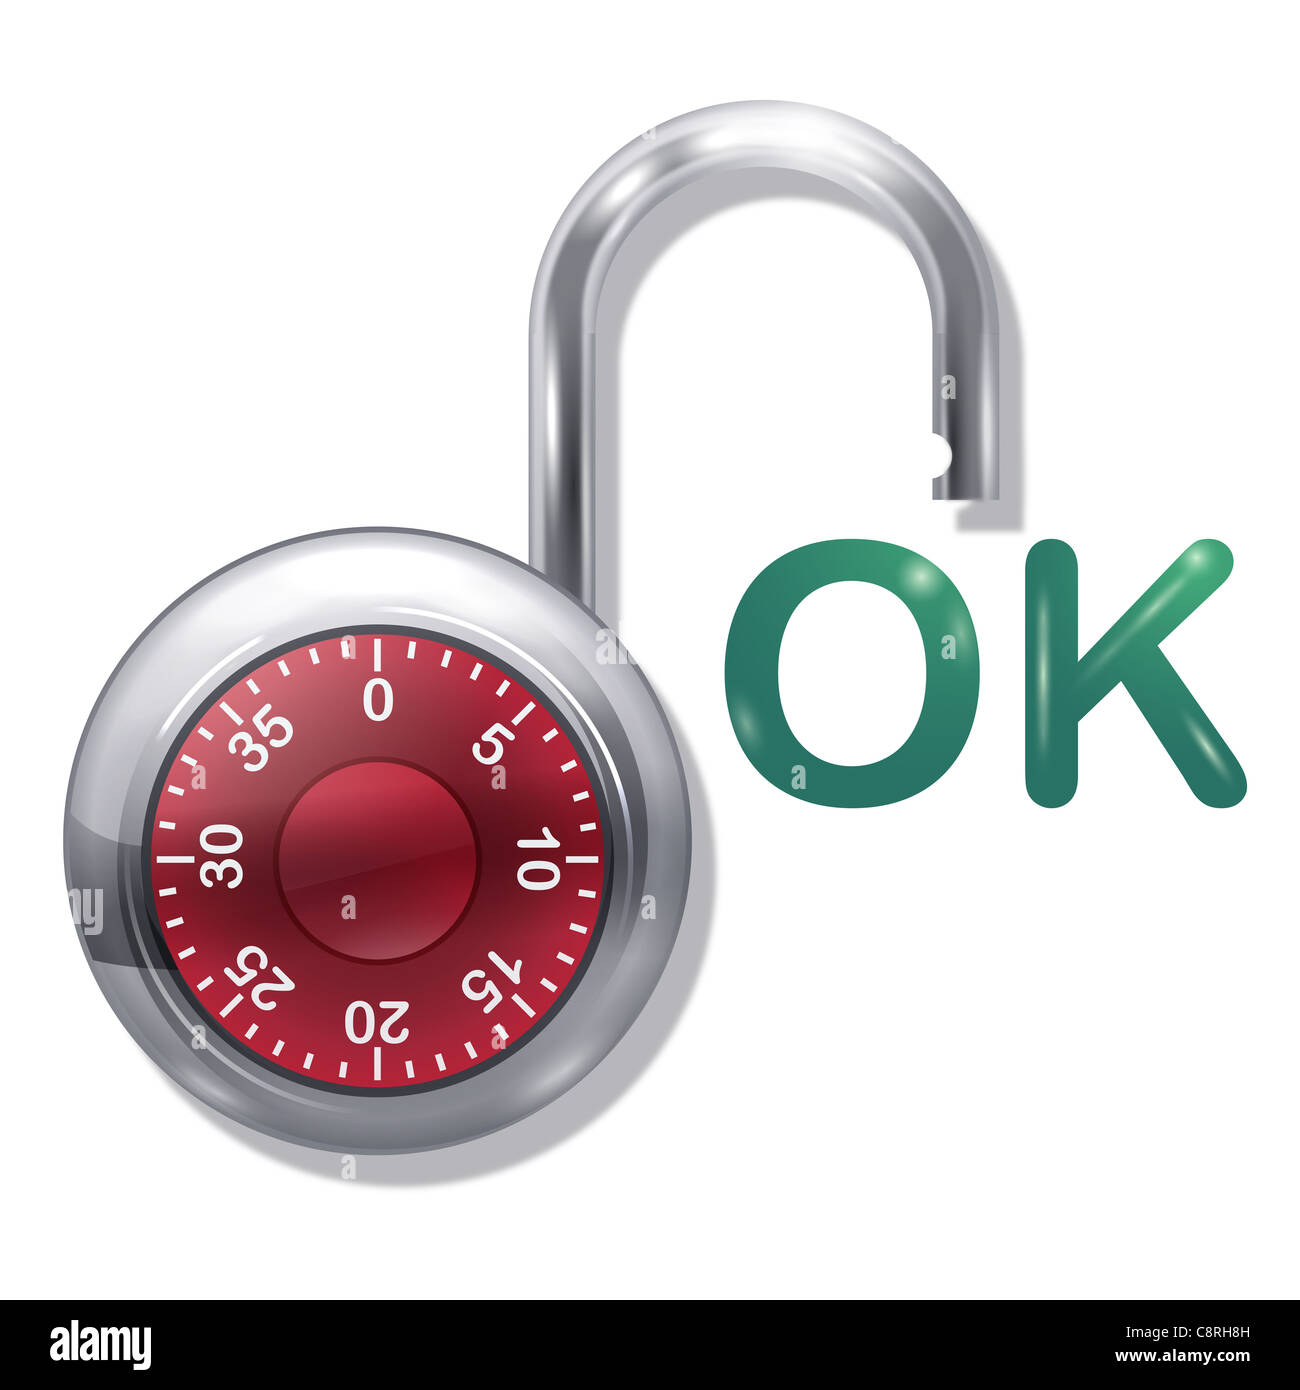 Illustration of open combination lock Stock Photo